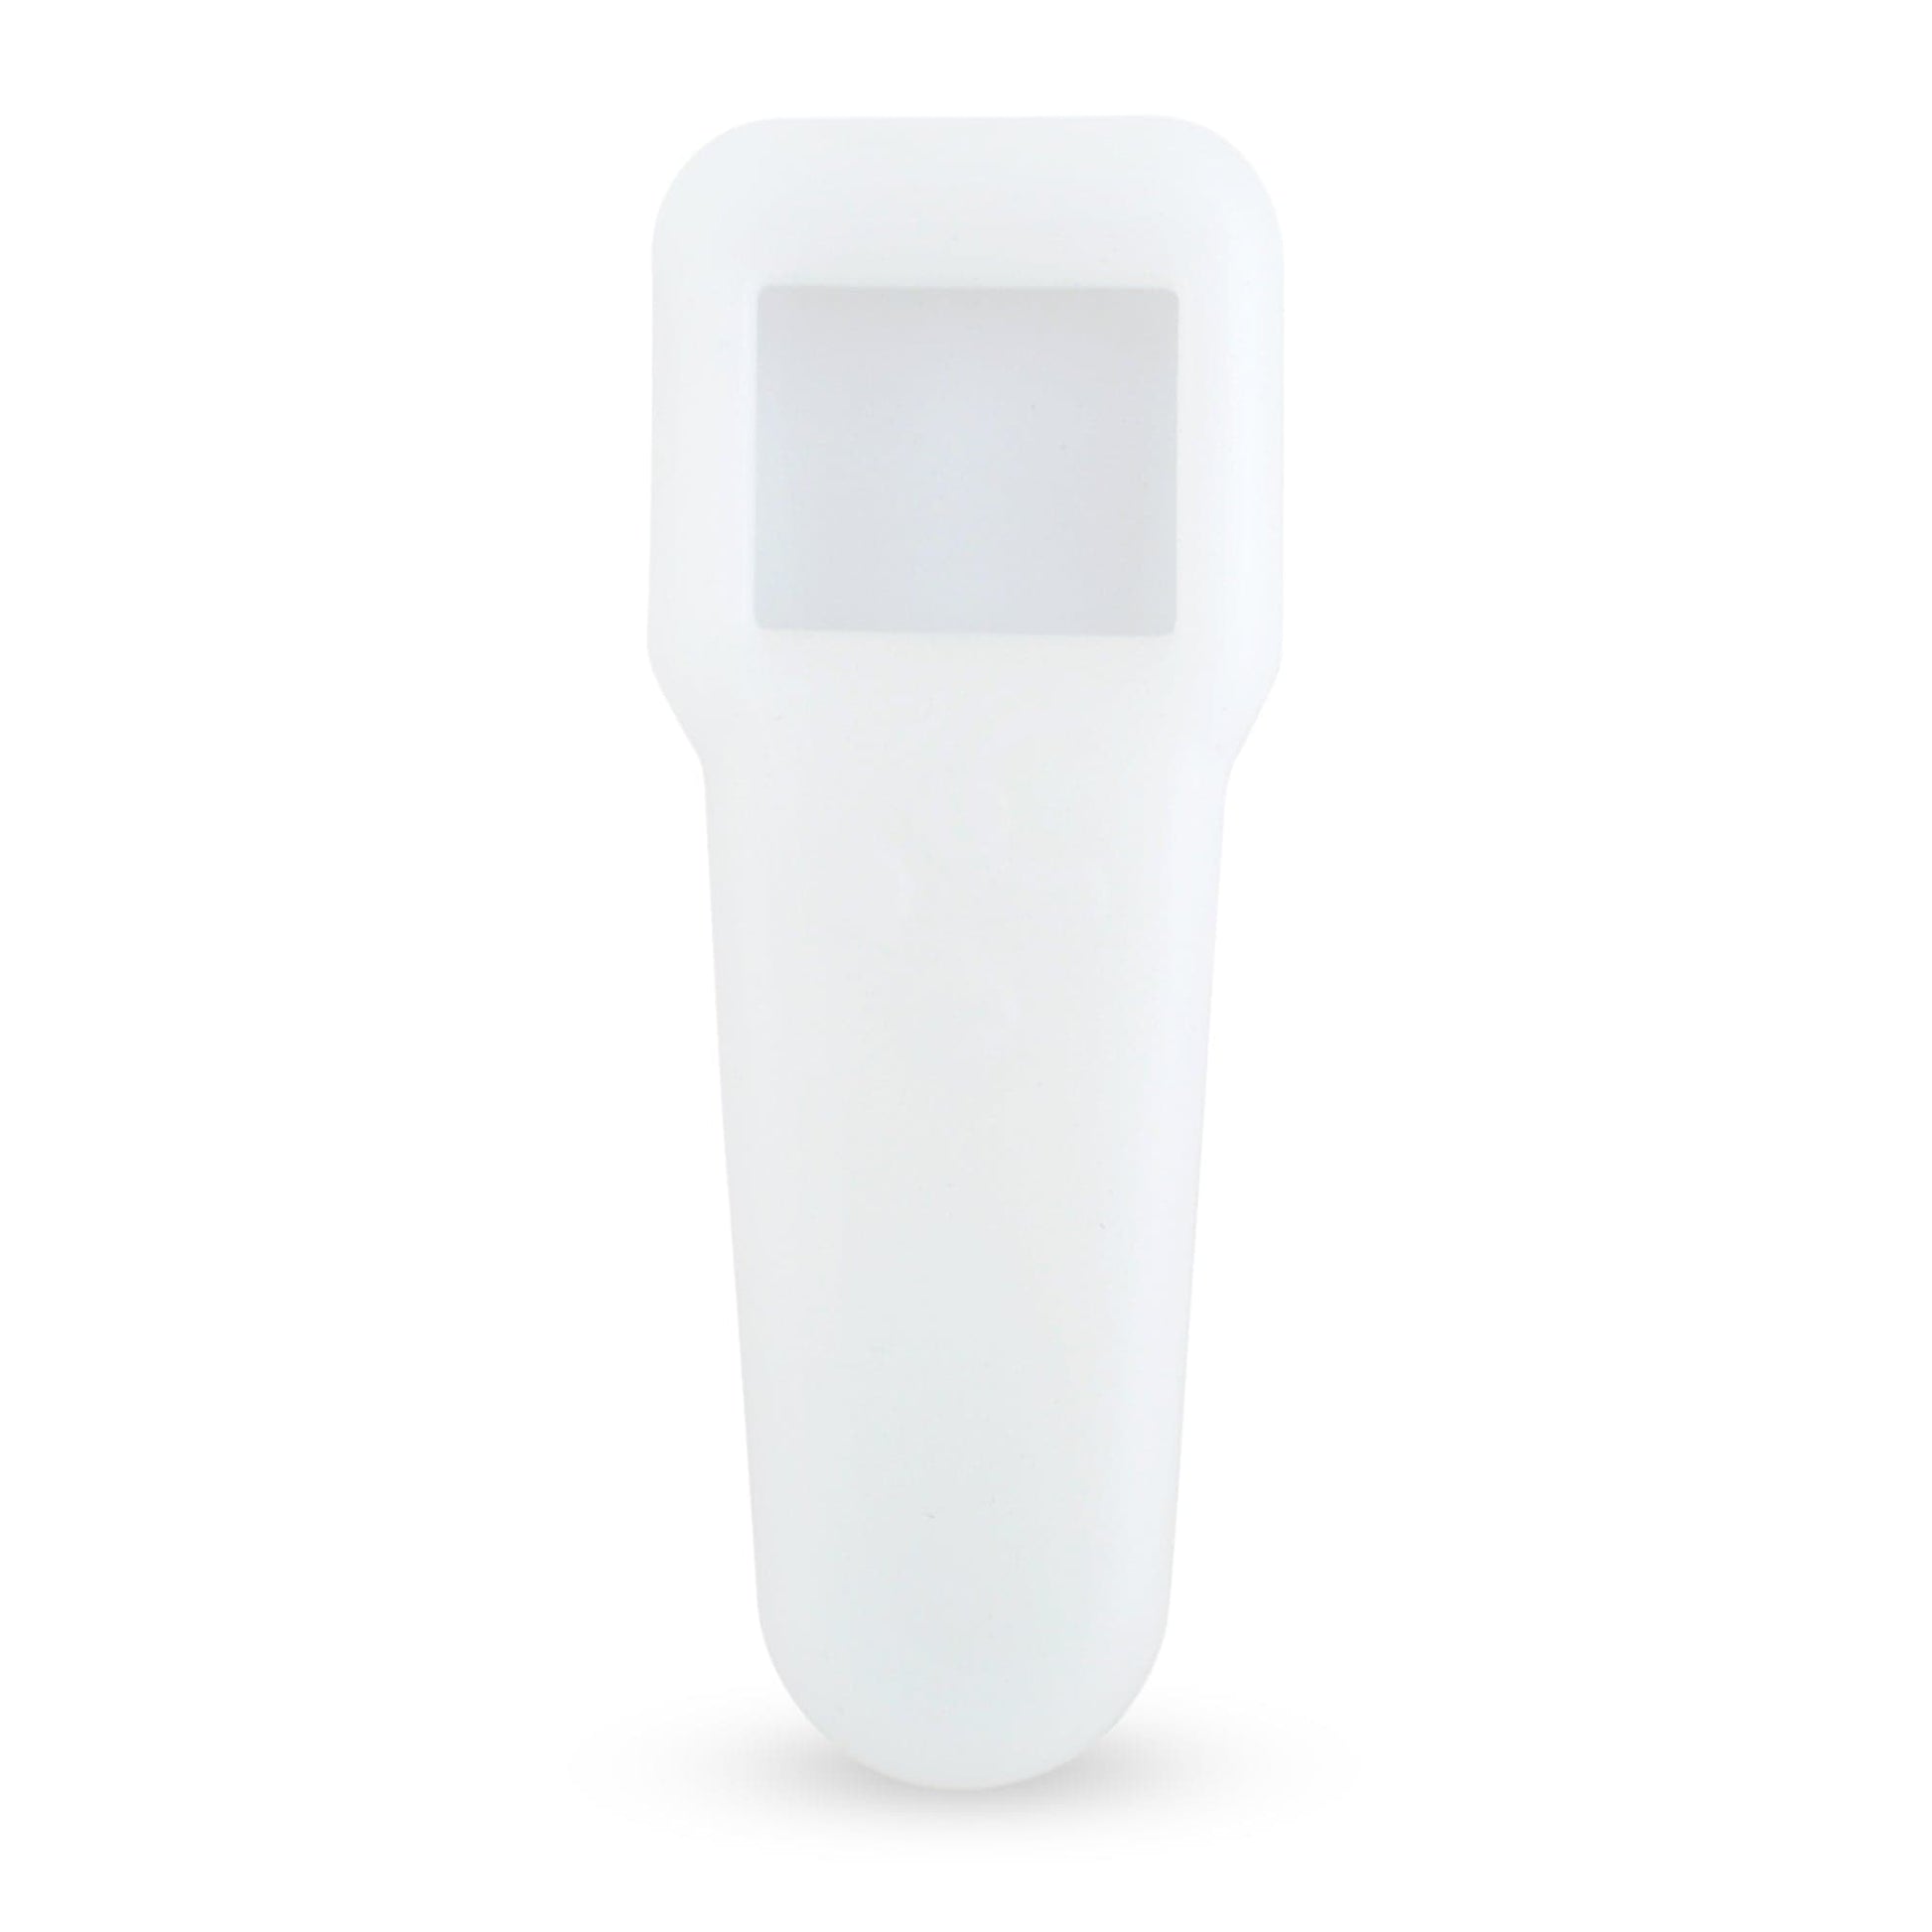 A Thermometre.fr Coque de protection en PVC sur fond blanc.